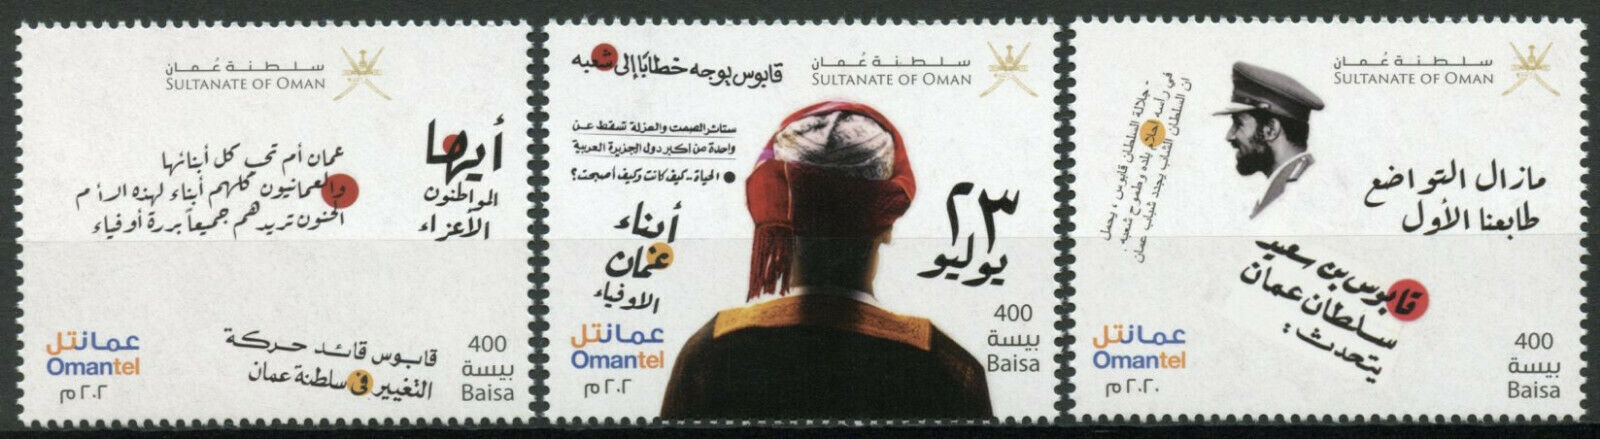 Oman Cultures Stamps 2020 MNH We Believe in Oman 3v Set